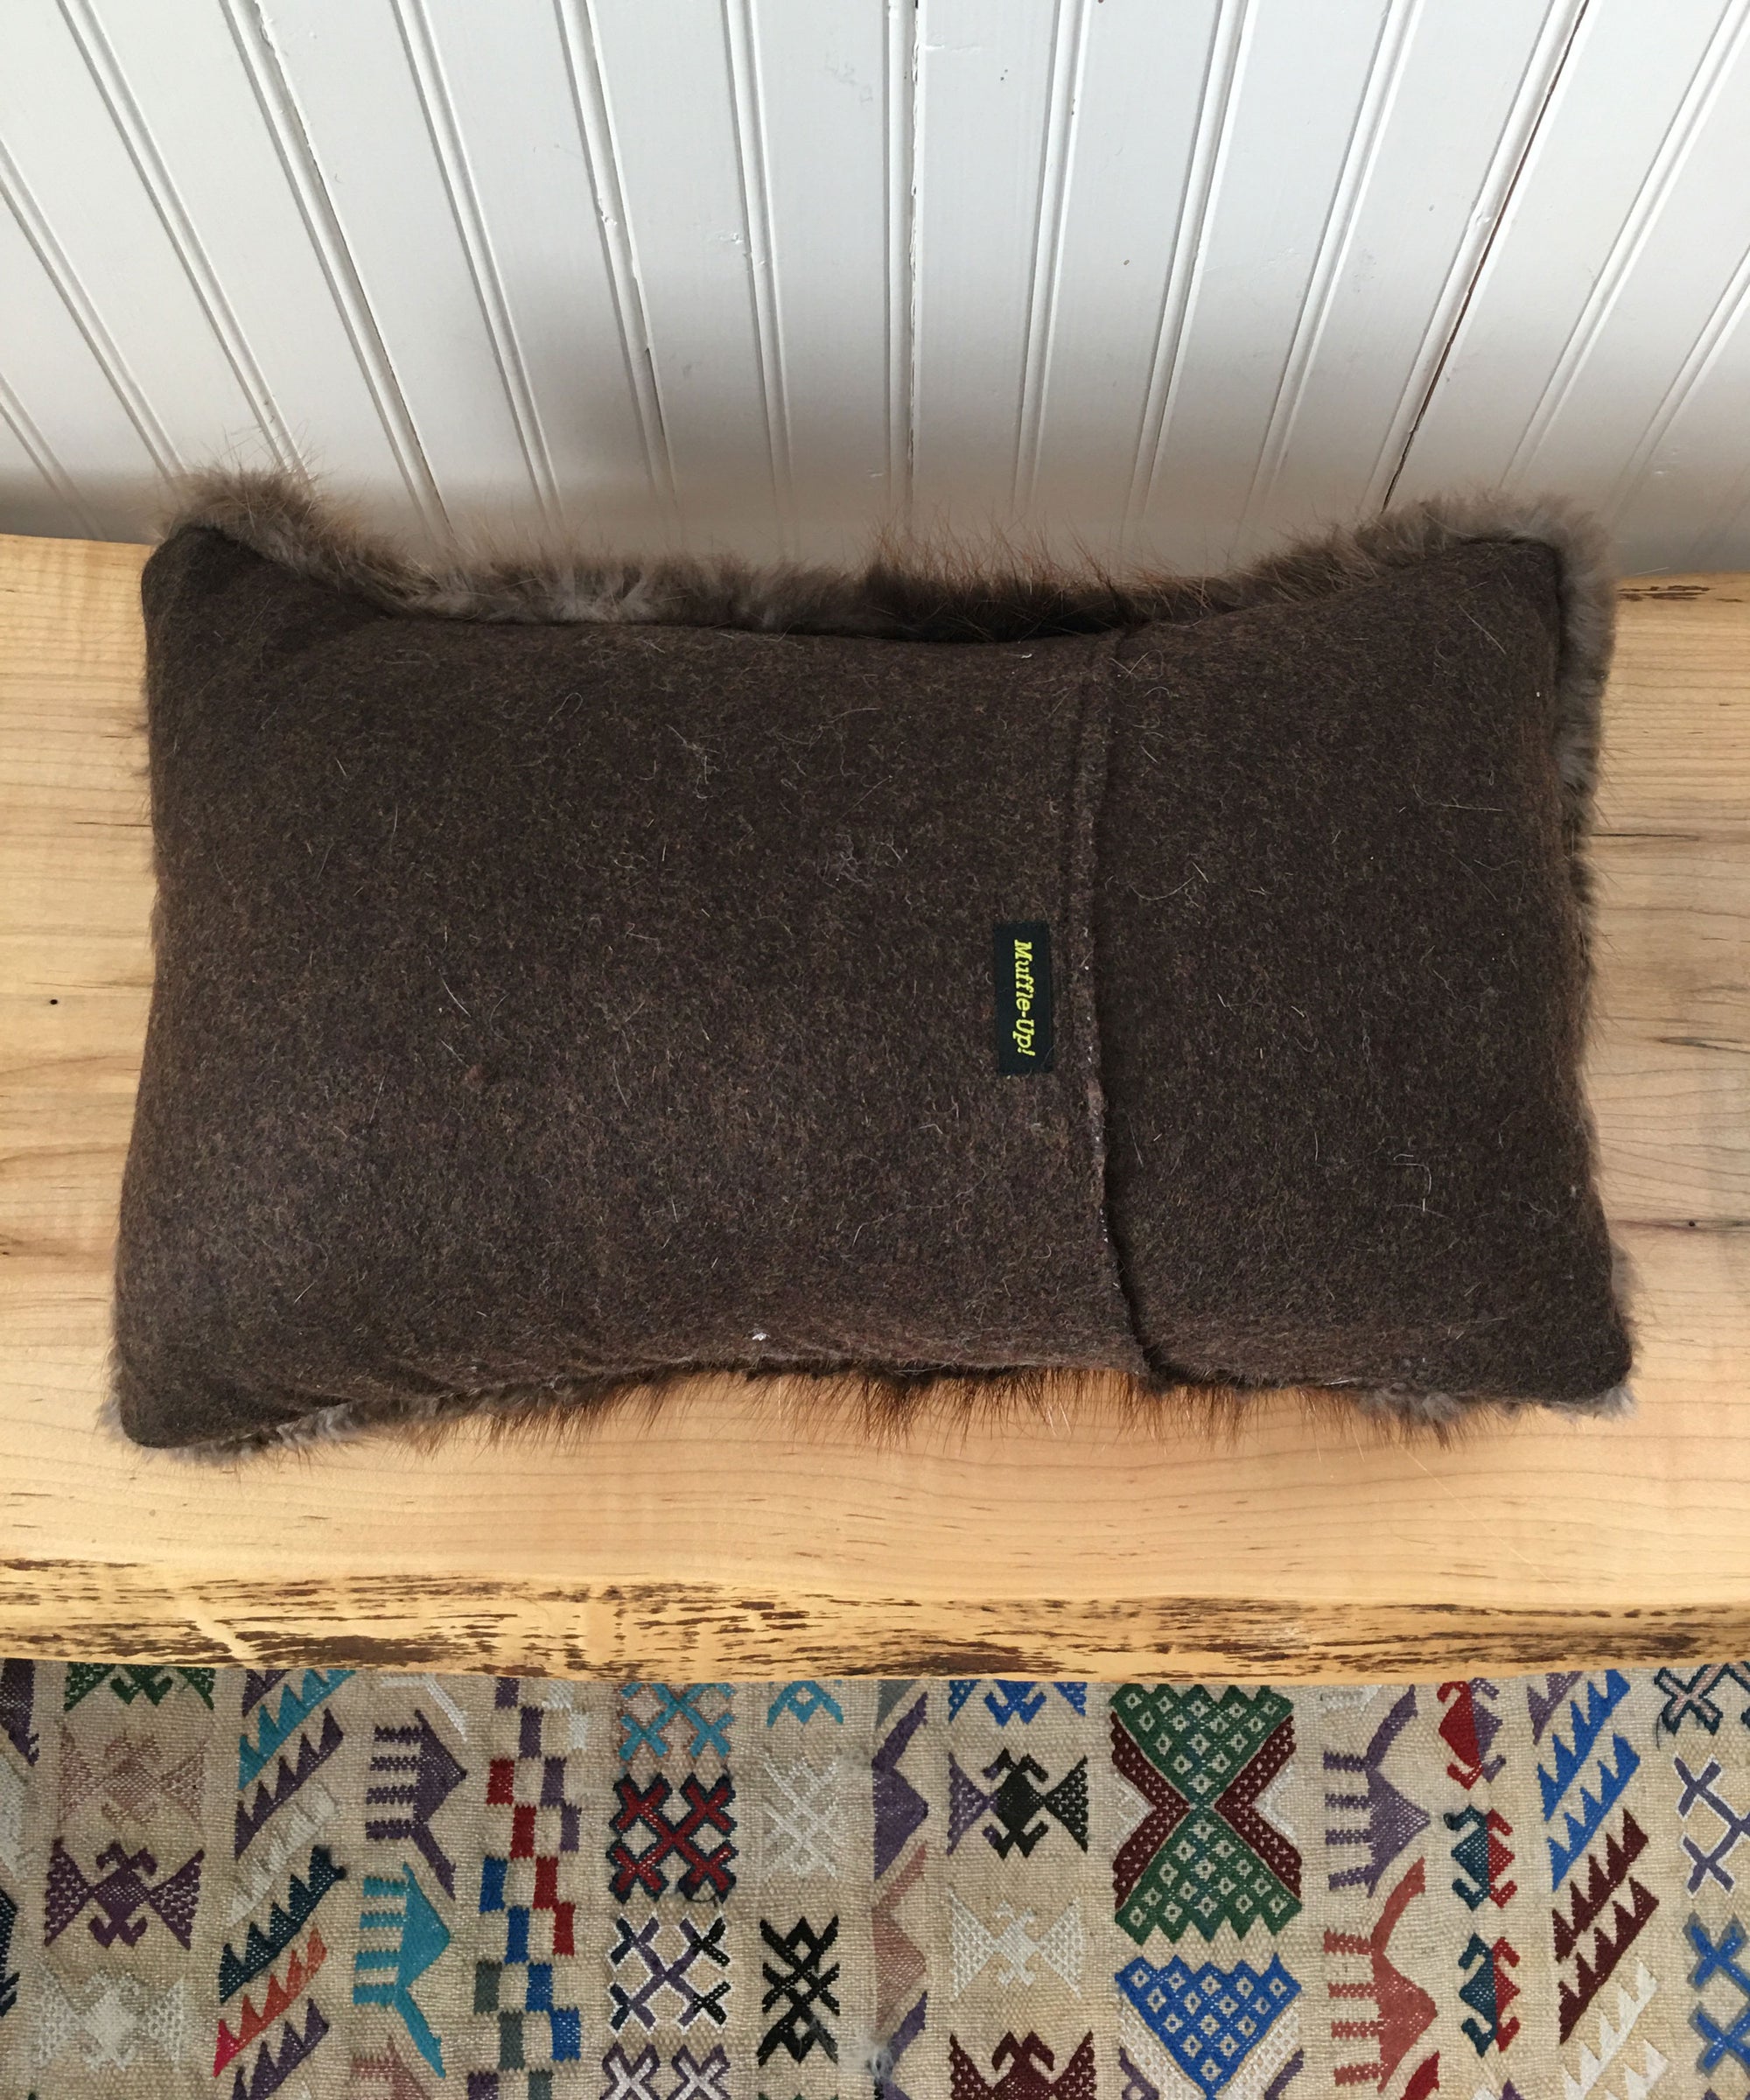 Beaver Fur Accent Pillows, 11" x 17"